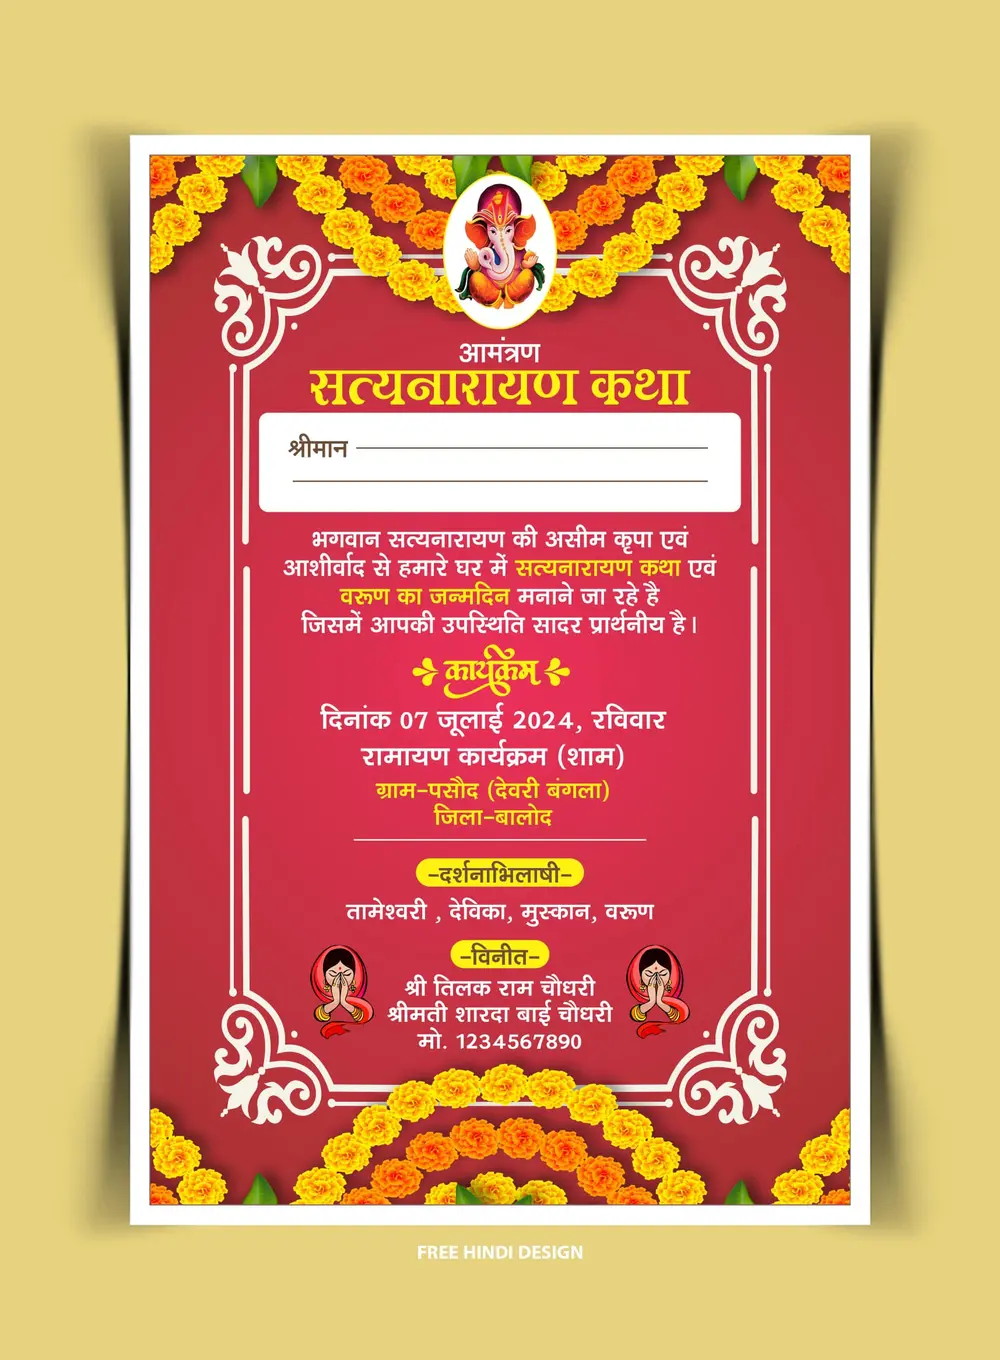 Satyanarayan katha puja invitation card template 010724